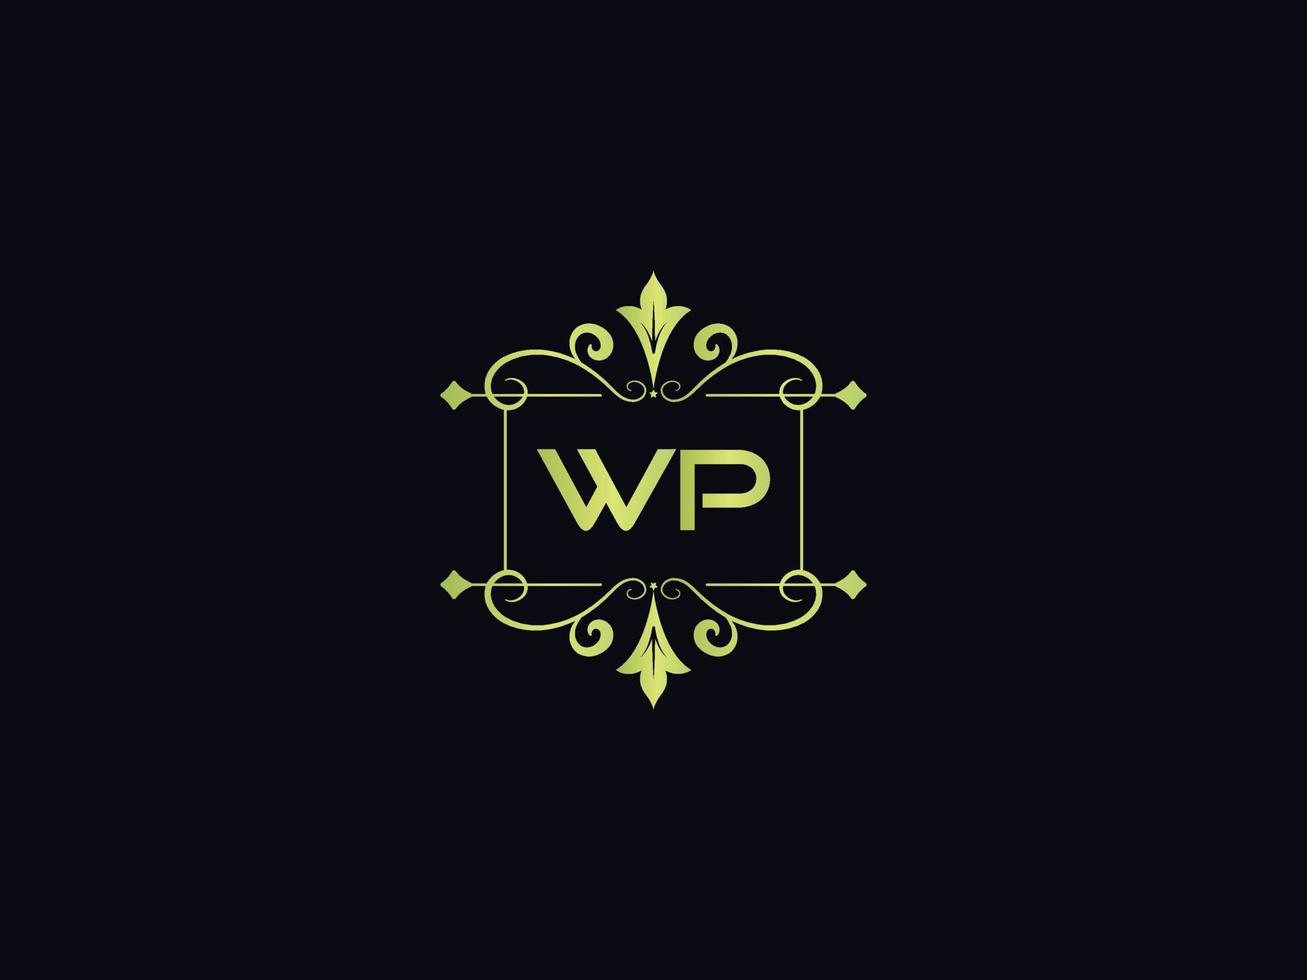 icône du logo typographie wp, logo unique de lettre colorée de luxe wp vecteur